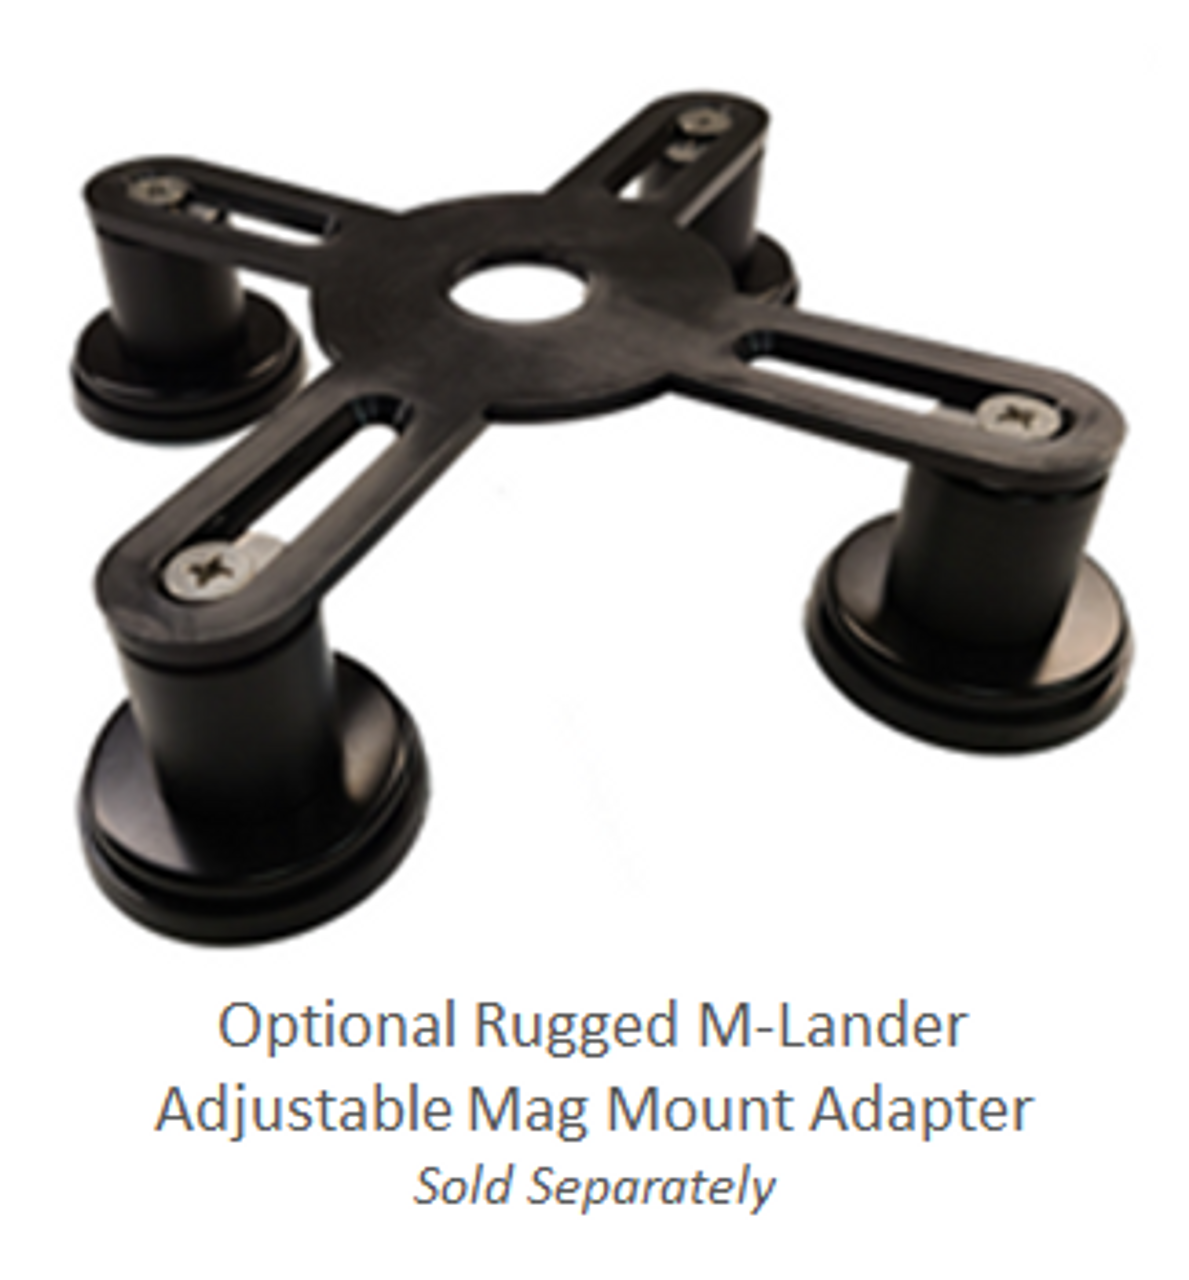 Optional Rugged M-Lander Magnetic Mount Adapter